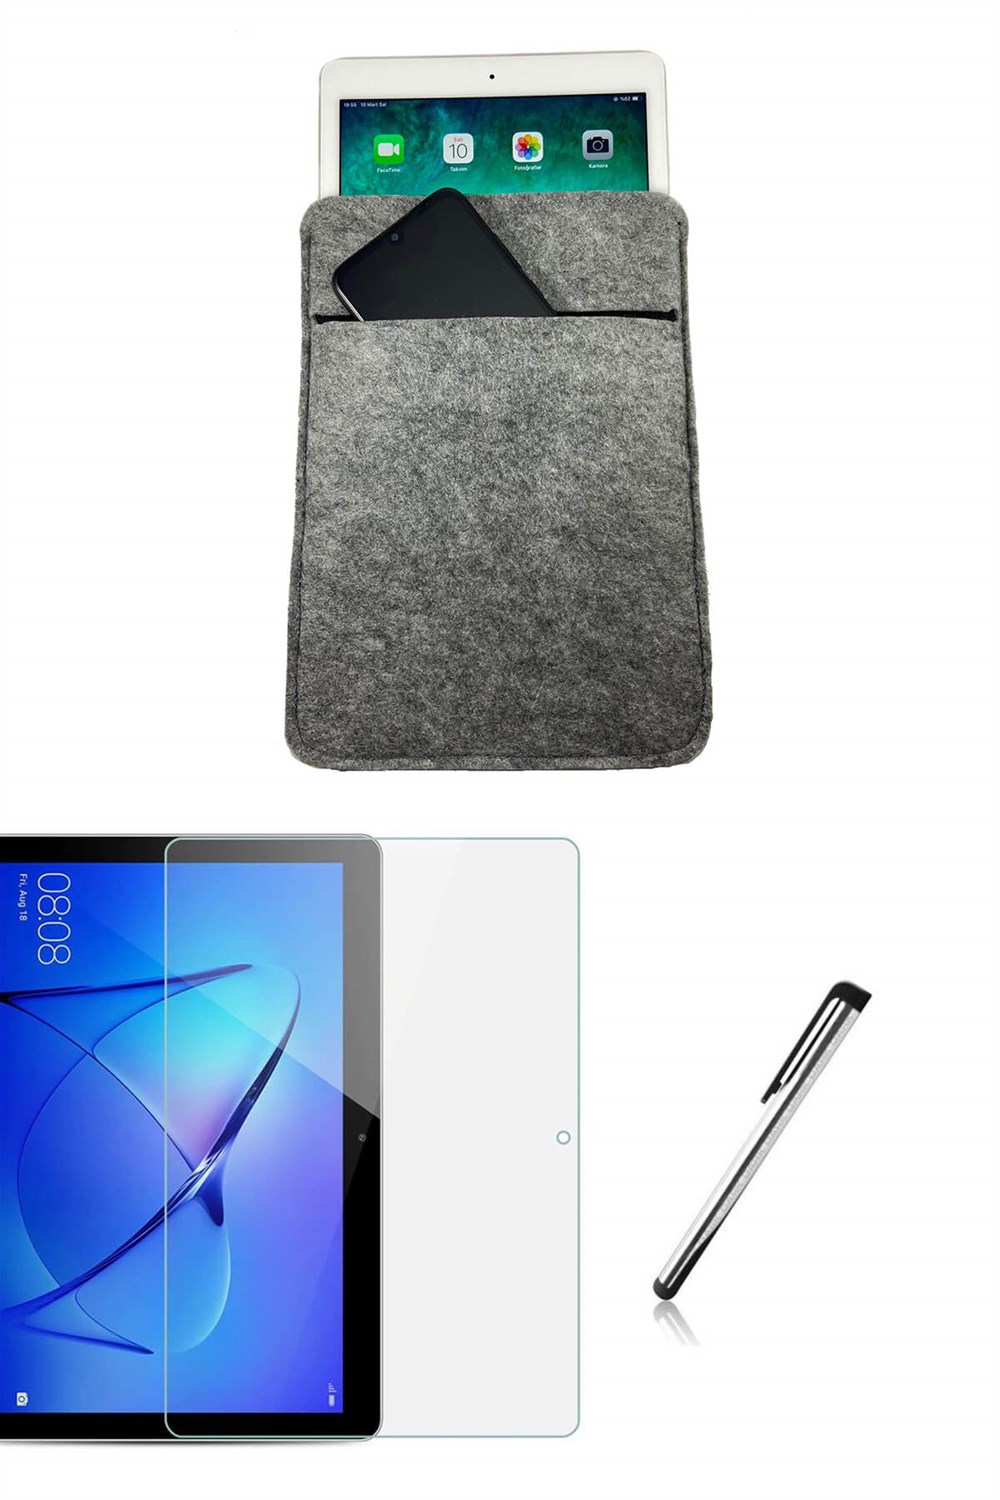 Huawei MediaPad T5 10.1 inç Özel Tasarım Tablet Kılıfı Seti I Esepetim.com